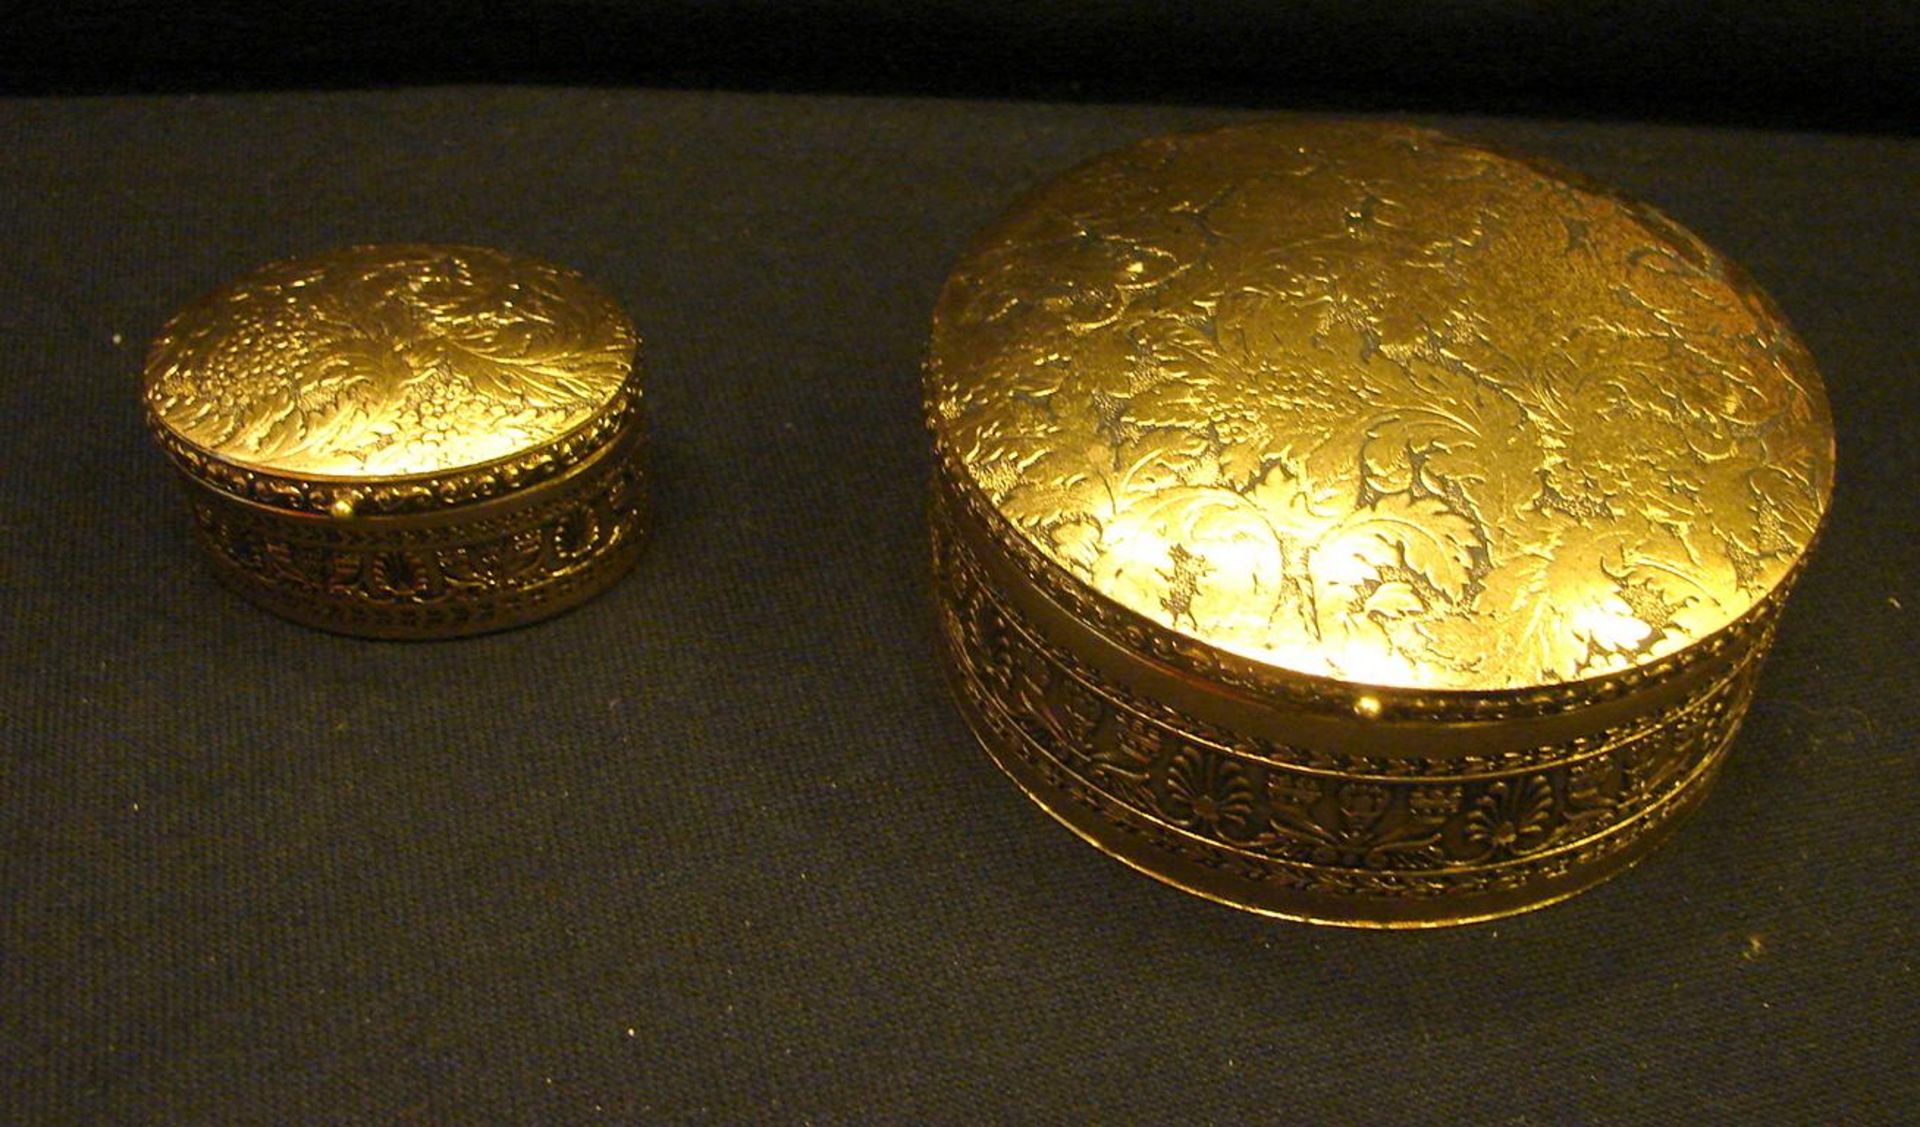 2 Schmuckdosen, oval, rund, H.ca. 3,4, Dm. 10,5 cm(Herstellung aus Bronze in alter Tradition nach